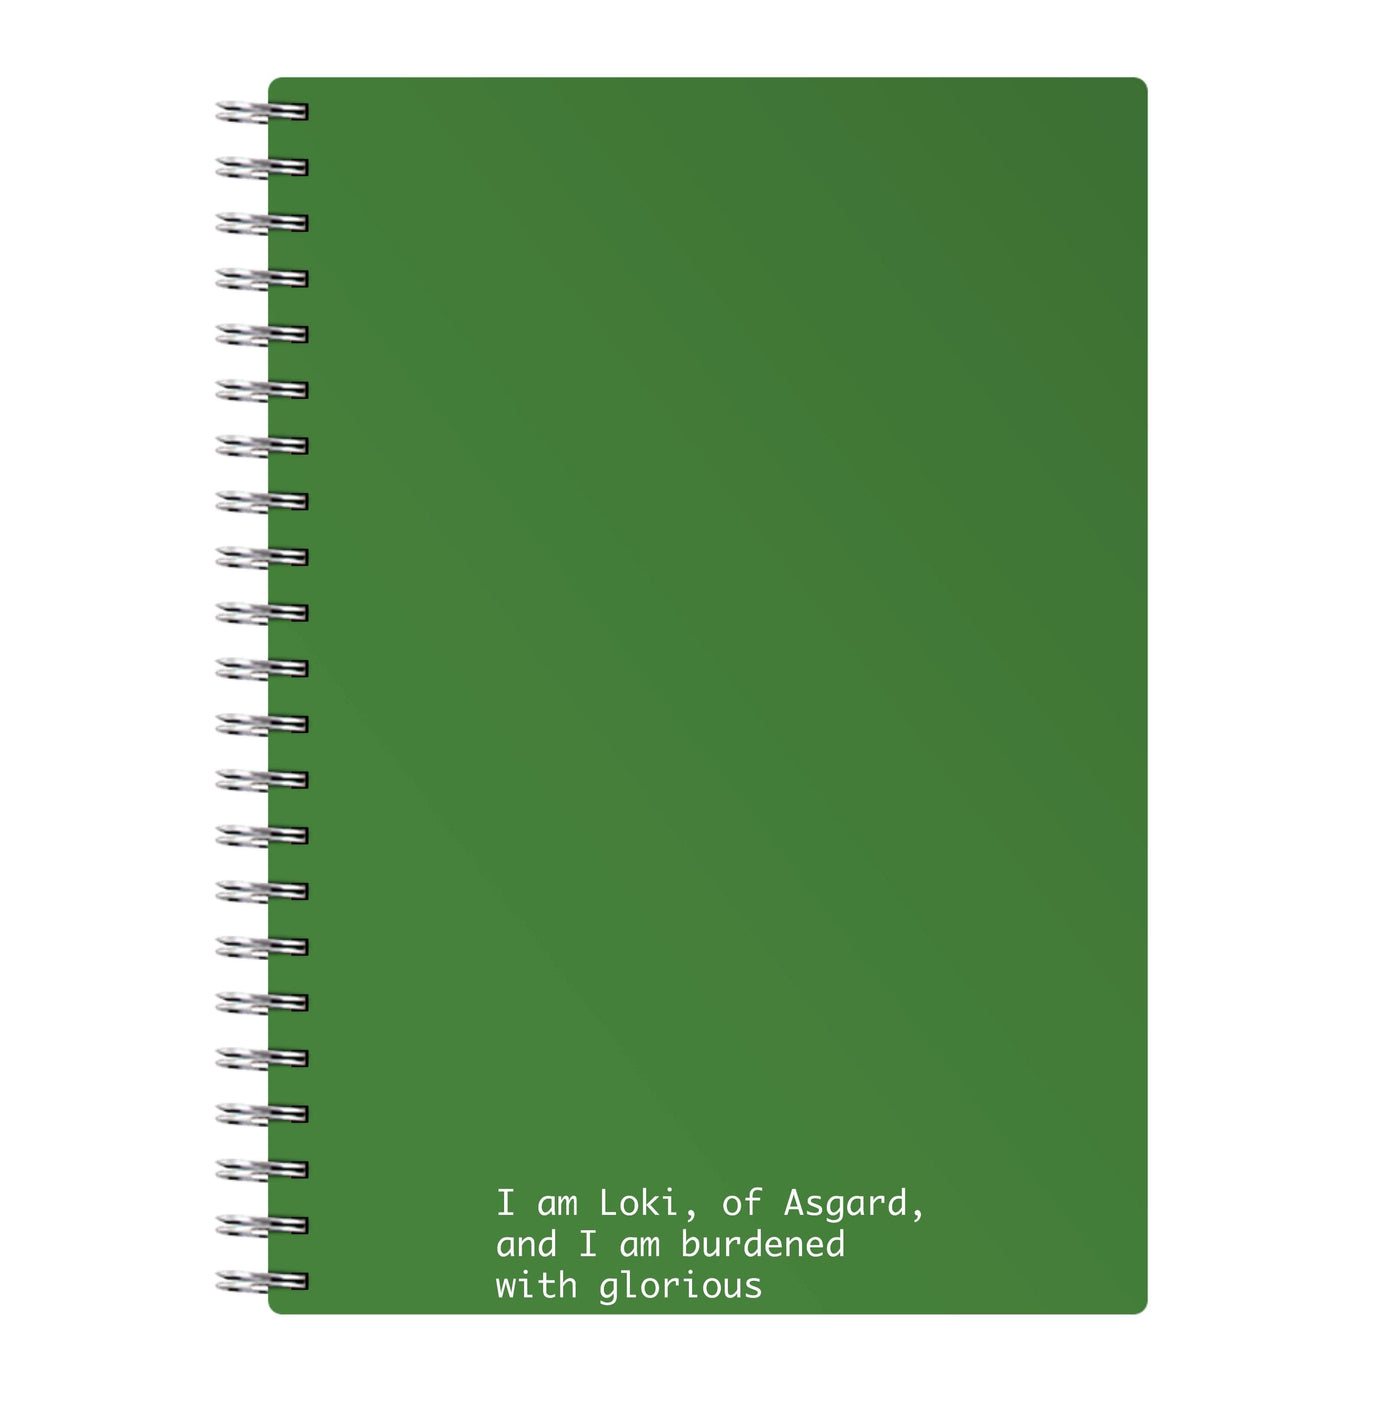 Burdened With Glorious Purpose - Loki Notebook